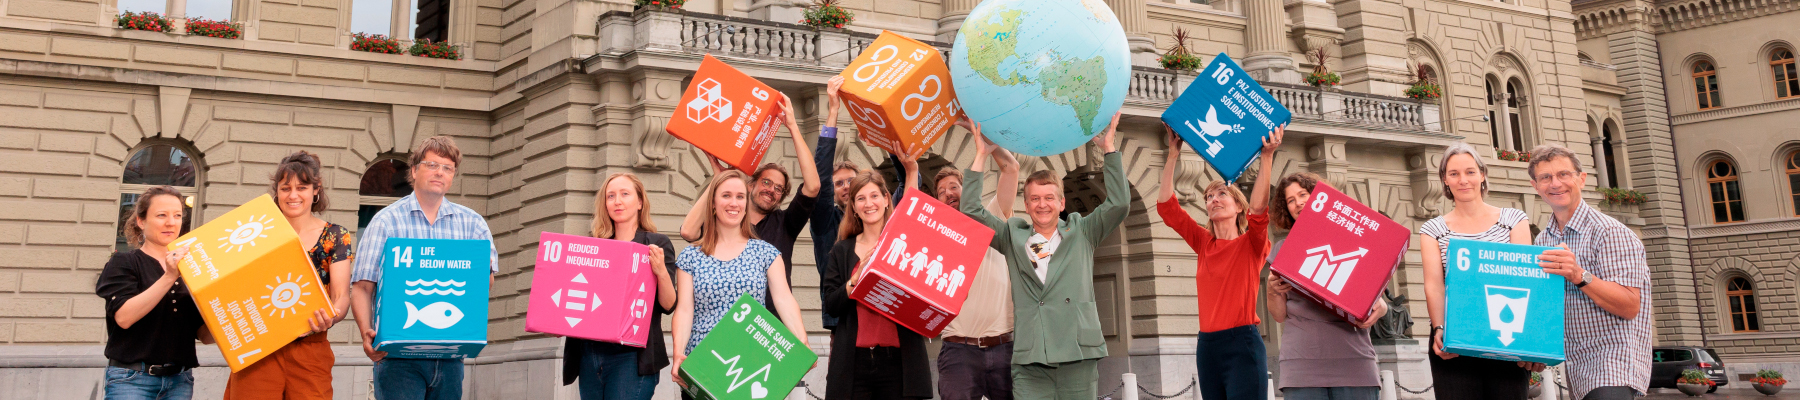 Un groupe de personnes se tient sur la Place fédérale avec de grands cubes SDG et un grand globe terrestre.